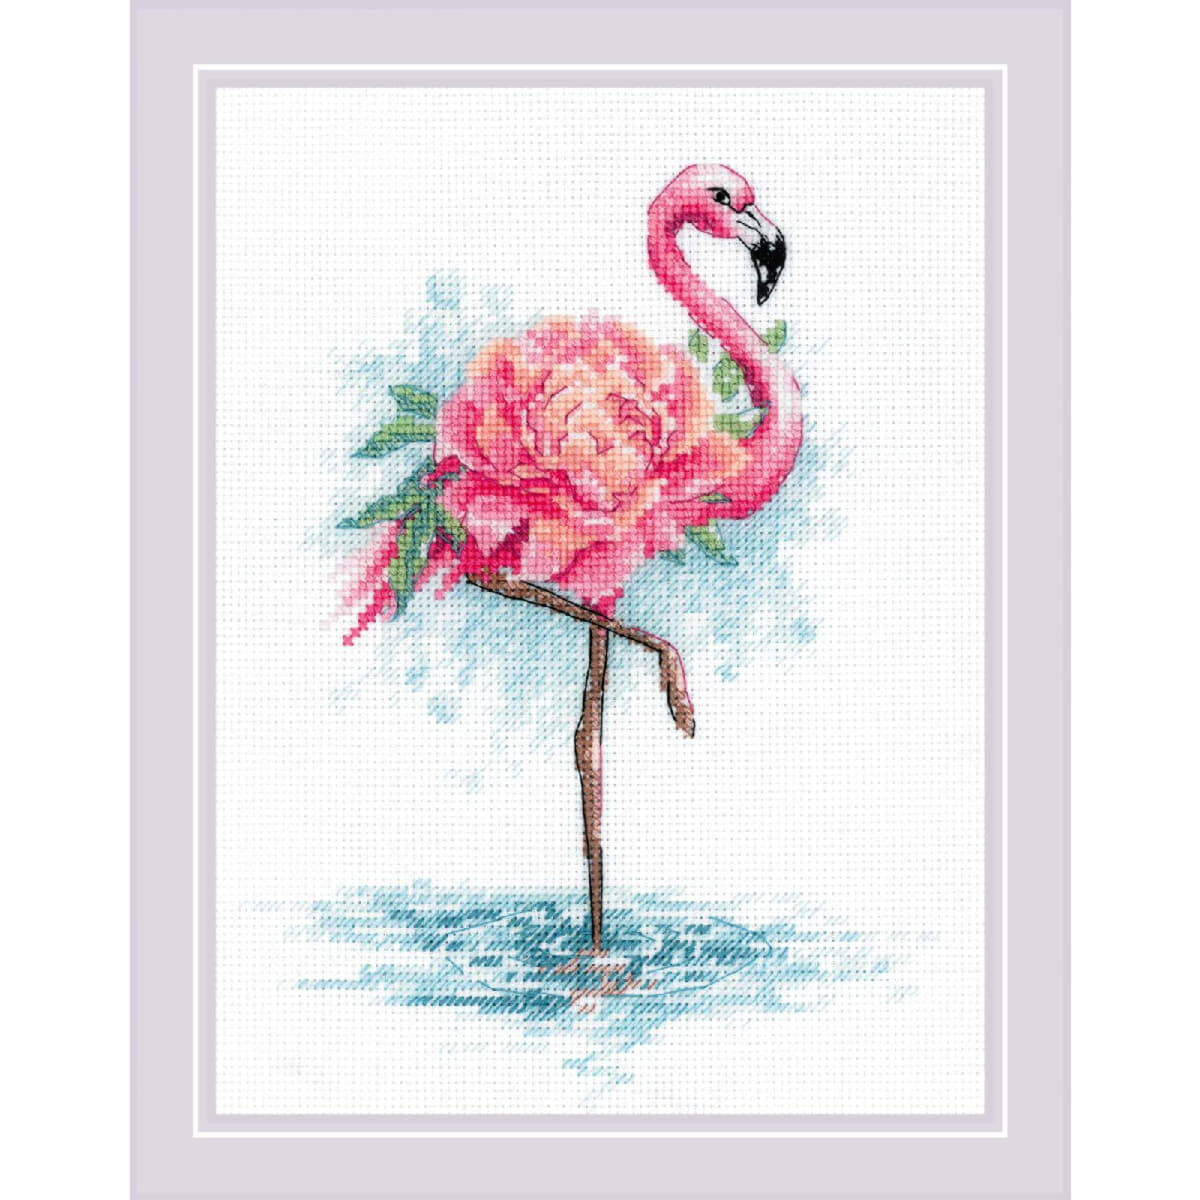 Kit point de croix Riolis "Blooming Flamingo",...